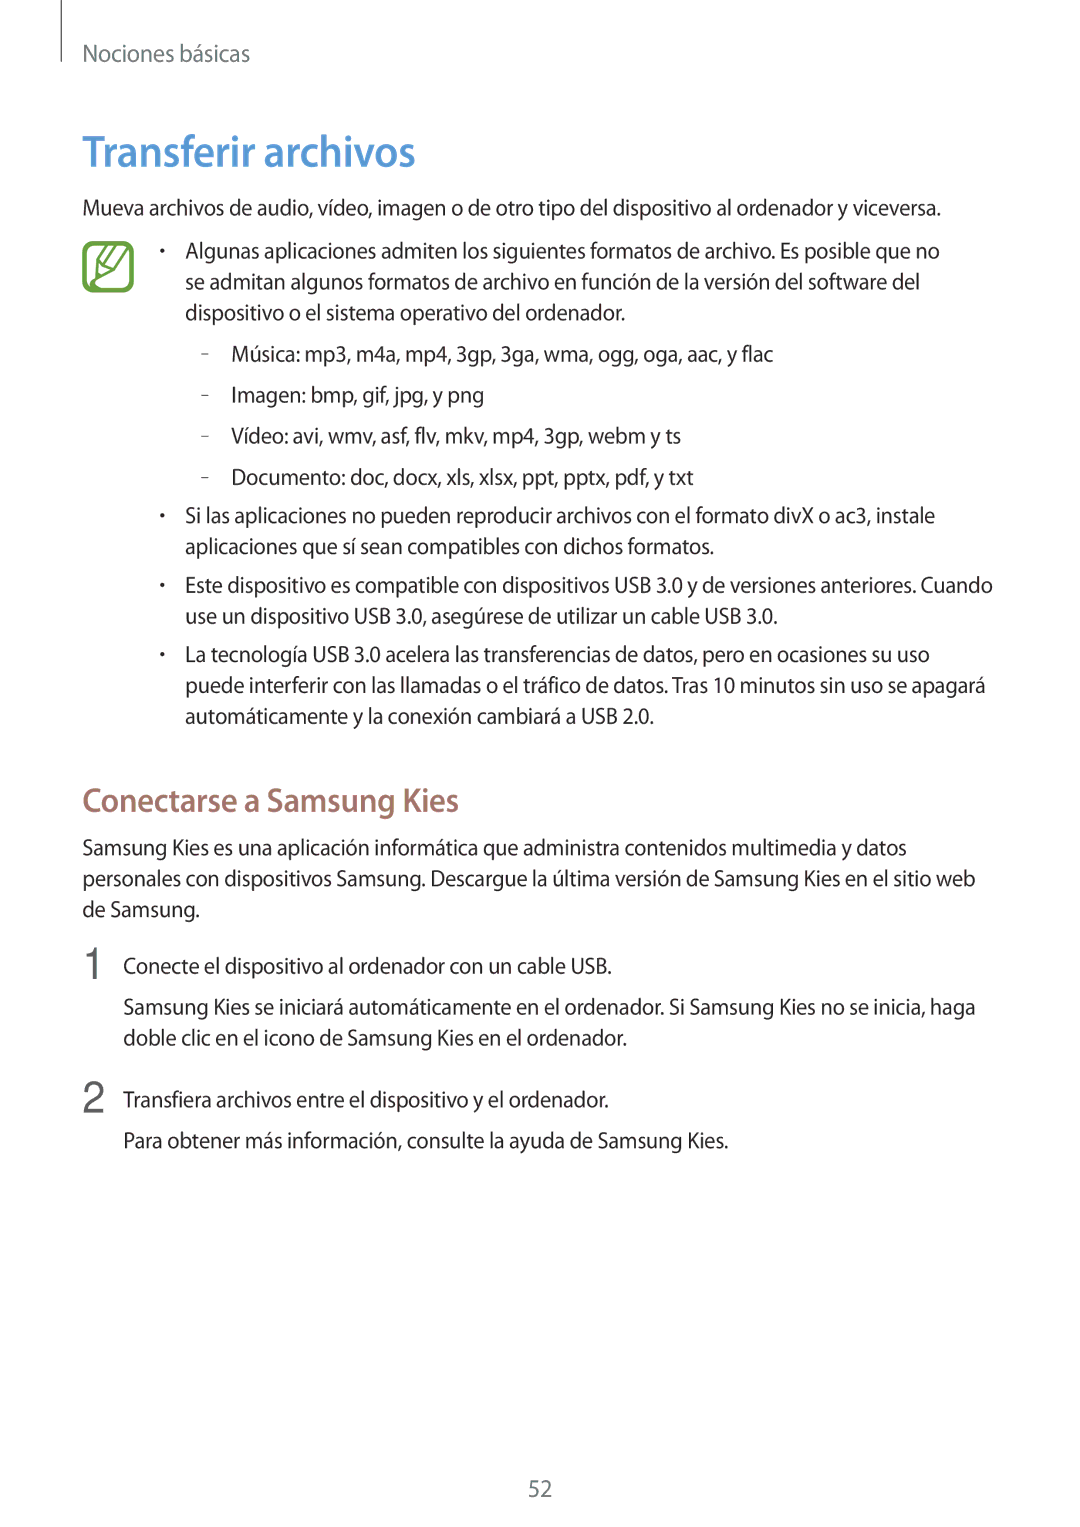 Samsung SM-N9005ZWEYOG, SM-N9005ZWEITV, SM-N9005ZWEDBT, SM-N9005ZKEEUR manual Transferir archivos, Conectarse a Samsung Kies 